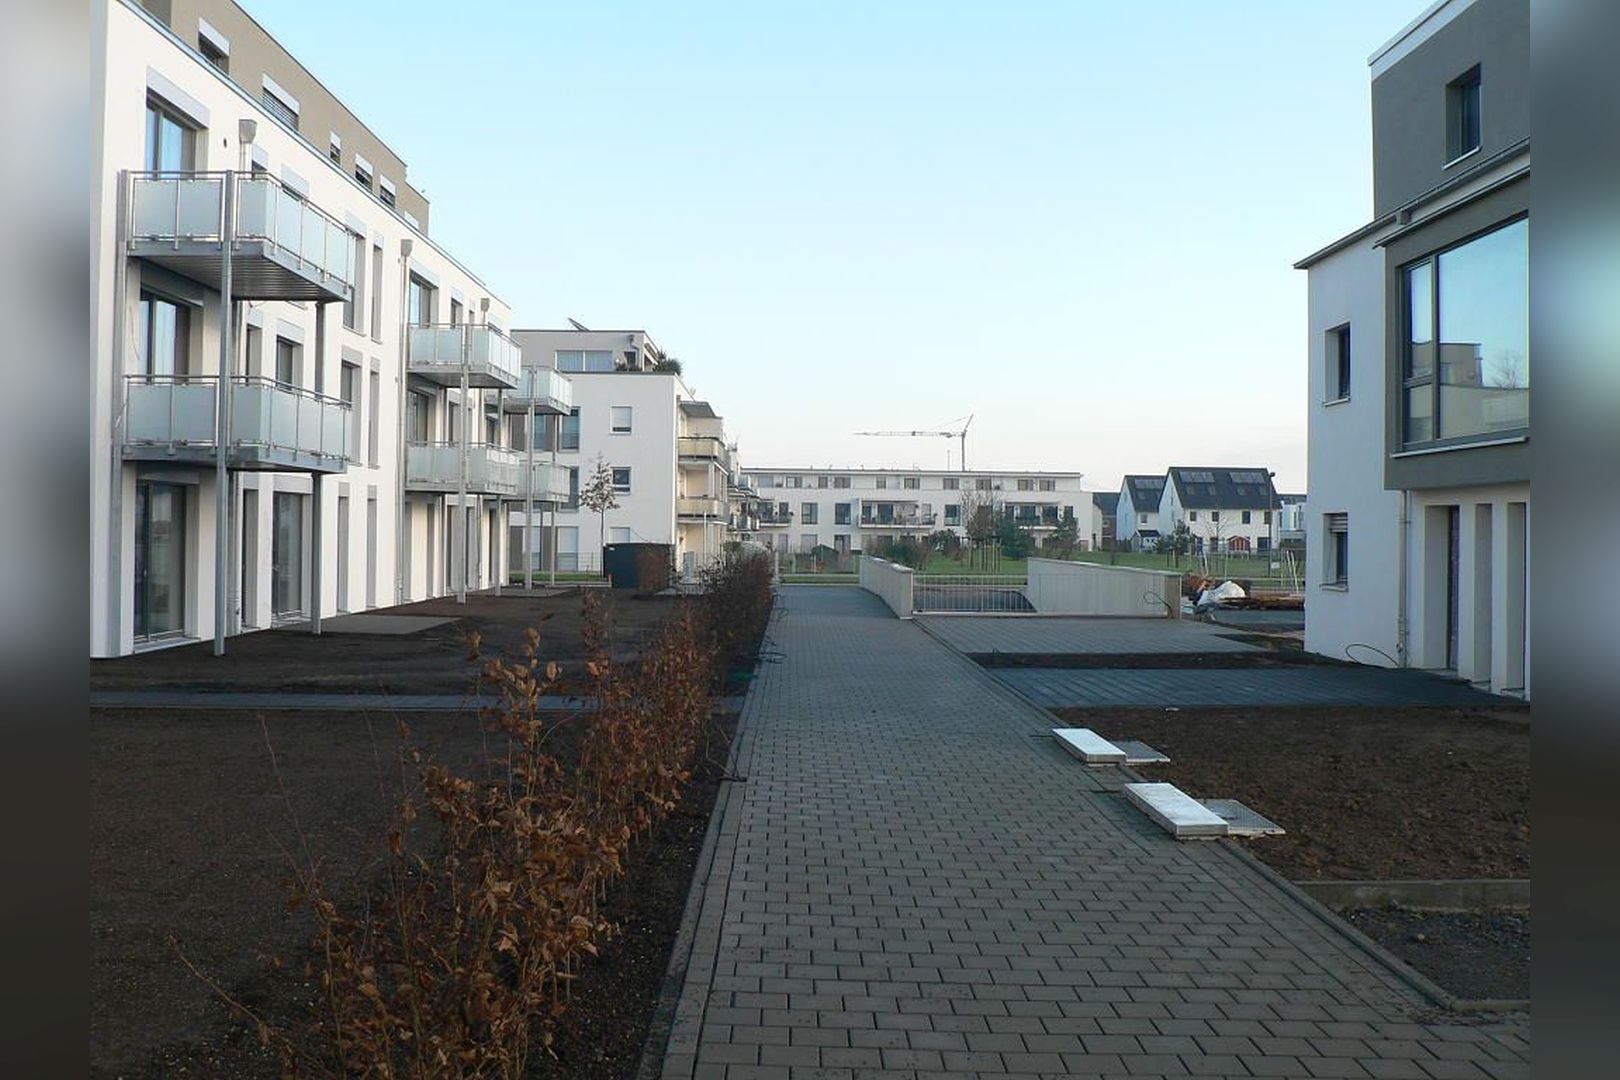 Immobilie Nr.Köln 100 - evohaus-Energie-autarkes-Wohnquartier: Einfamilienhäuser in Reihe und Eigentumswohnungen von 2 - 5 Zimmern in mehreren Häusern. Und das: weitestgehend Energie-autark und KfW-55-förderfähig!   - Bild 2.jpg